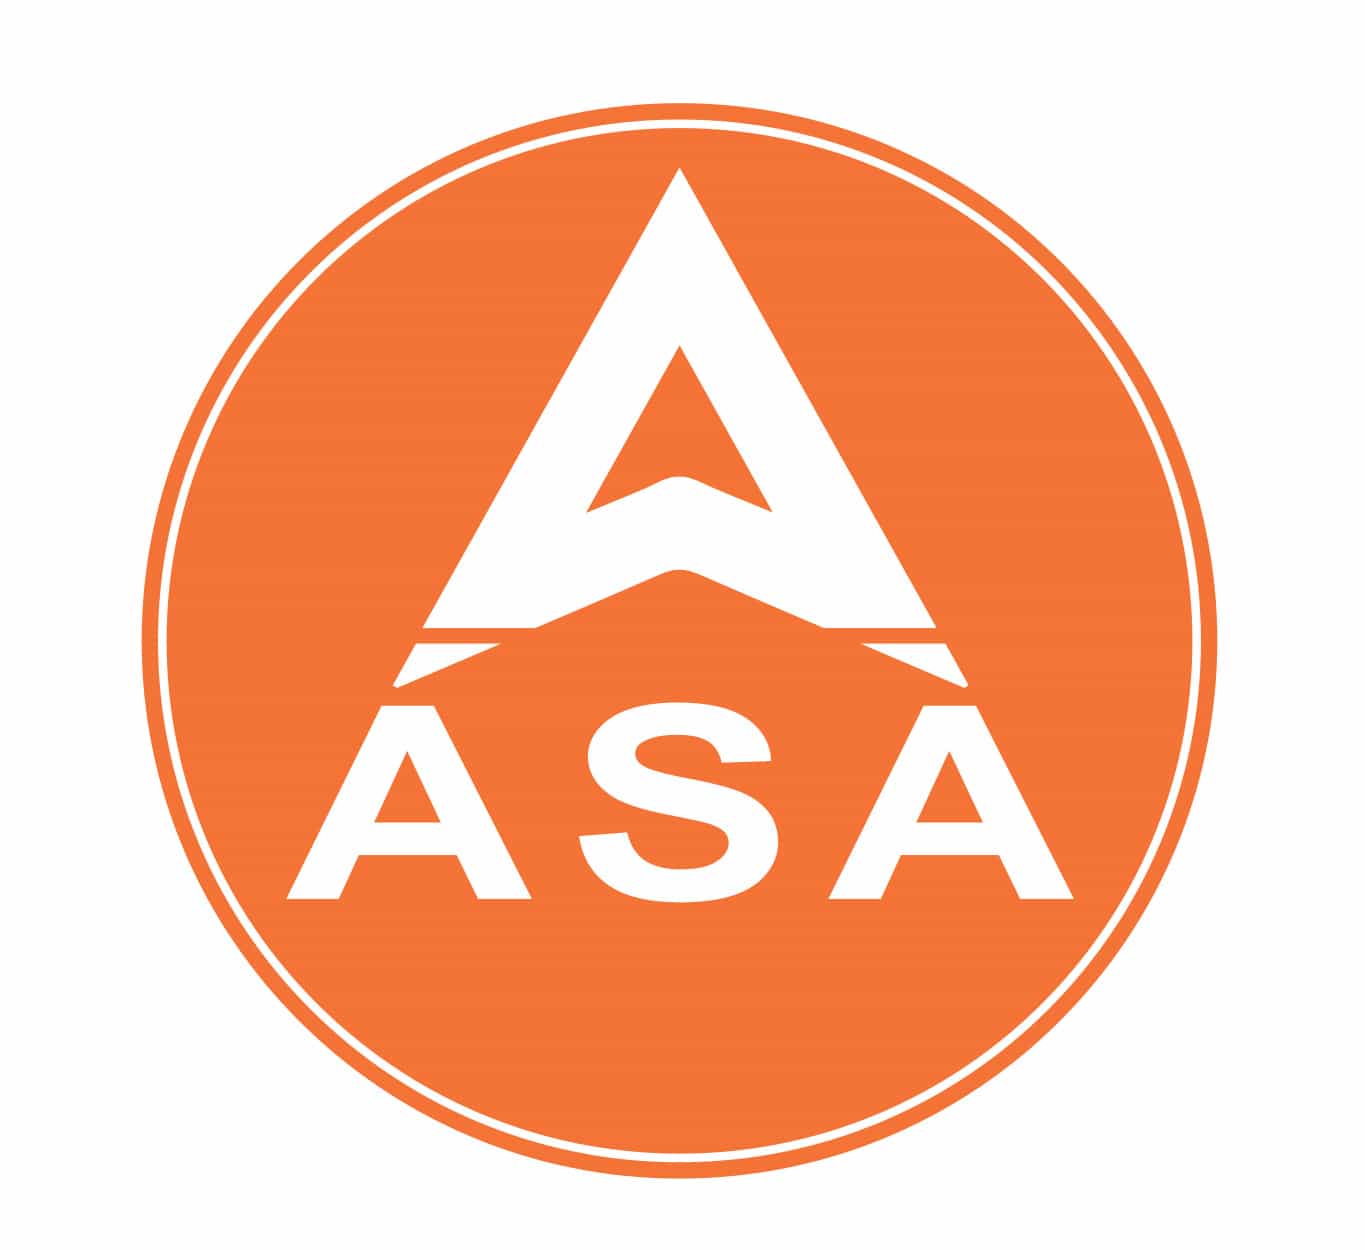 ASA là đơn vị chuyên cung cấp kệ sắt chất lượng cao tại TP.HCM